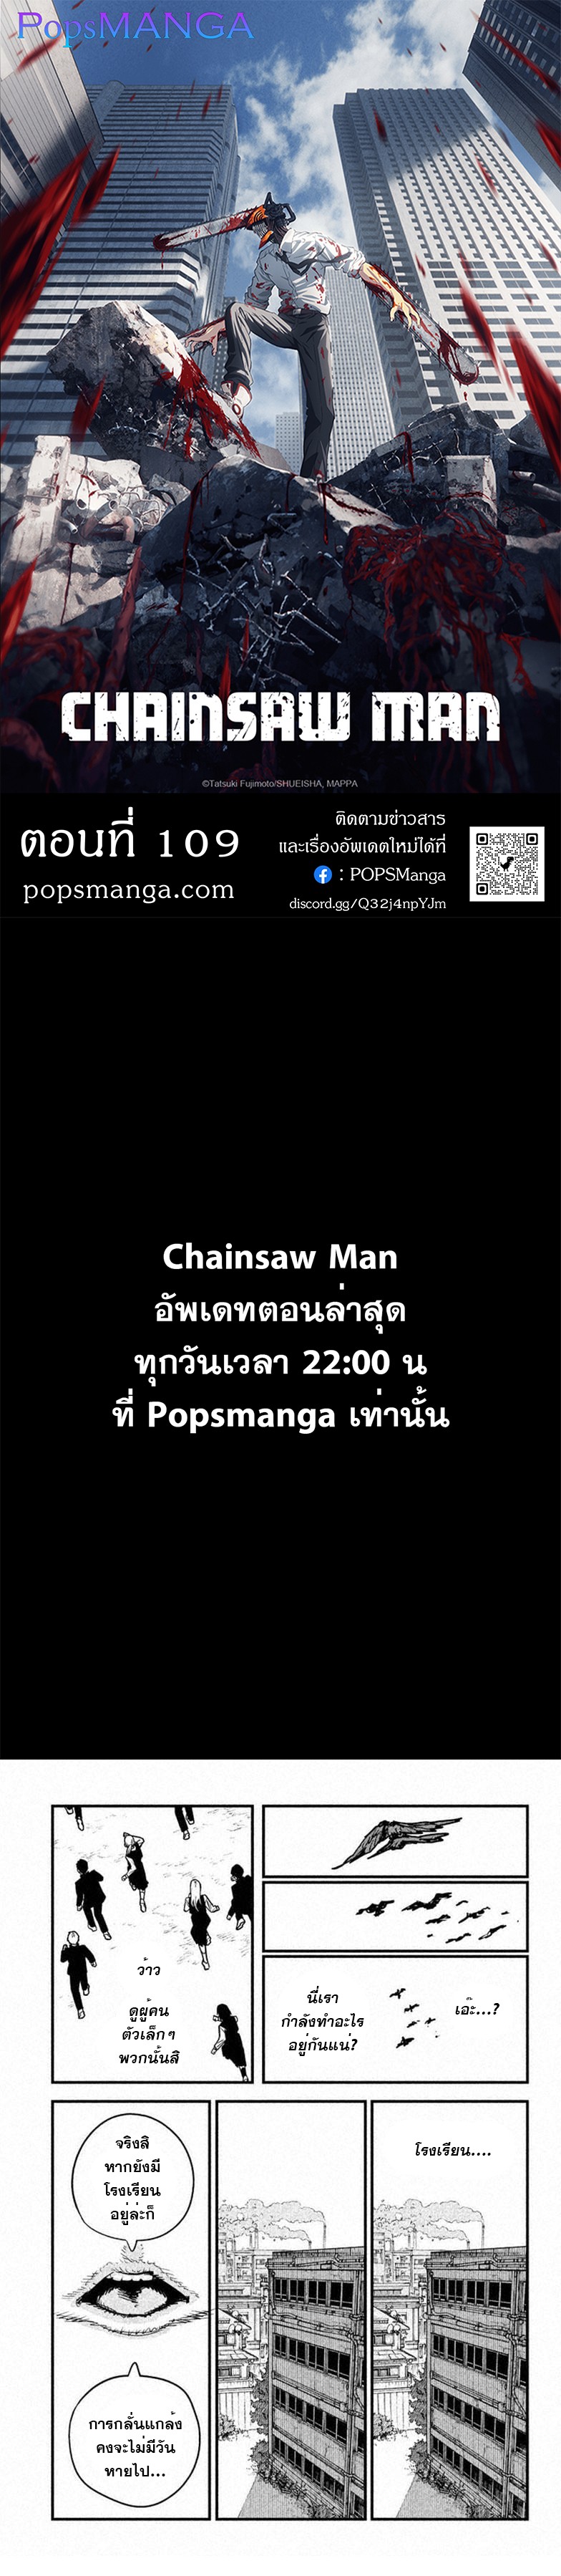 Chainsaw Man 109 1